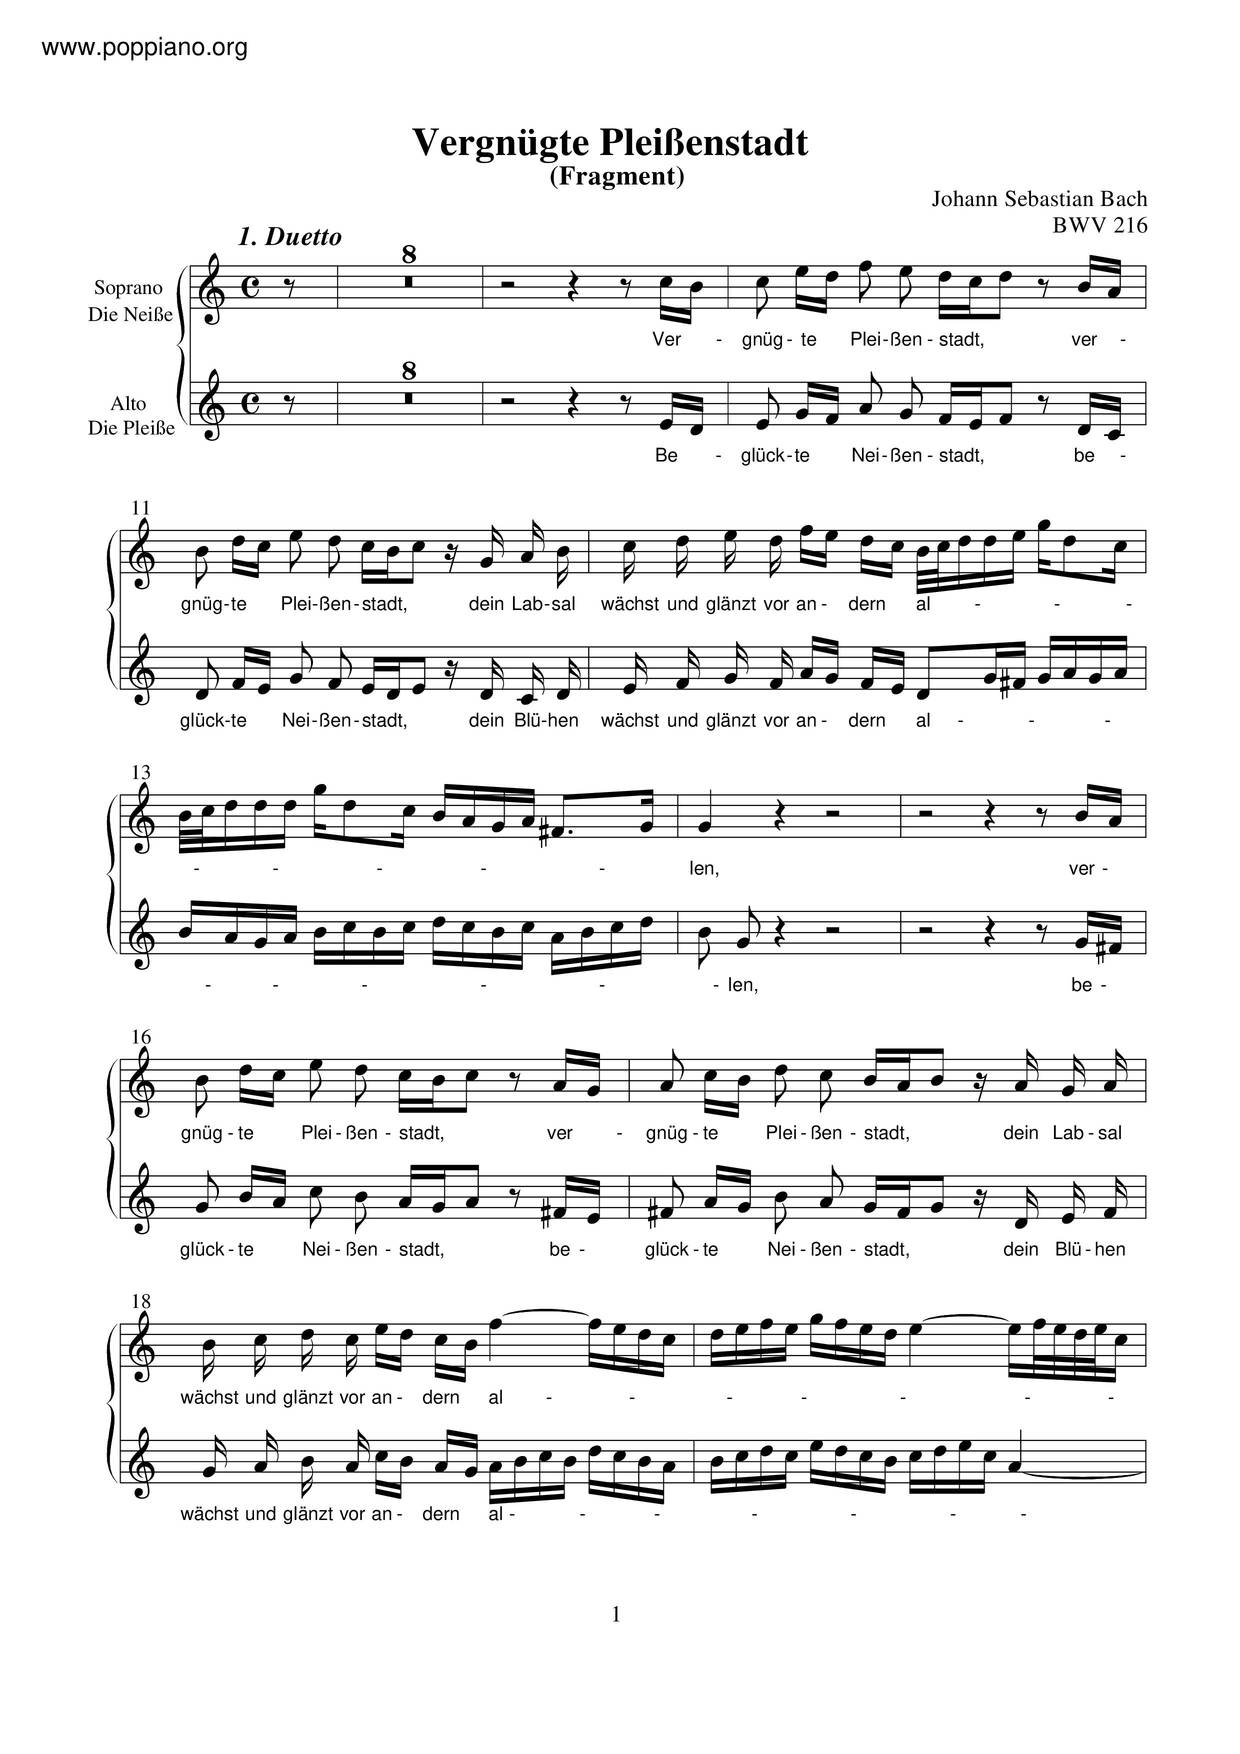 Vergnügte Pleissenstadt, BWV 216ピアノ譜